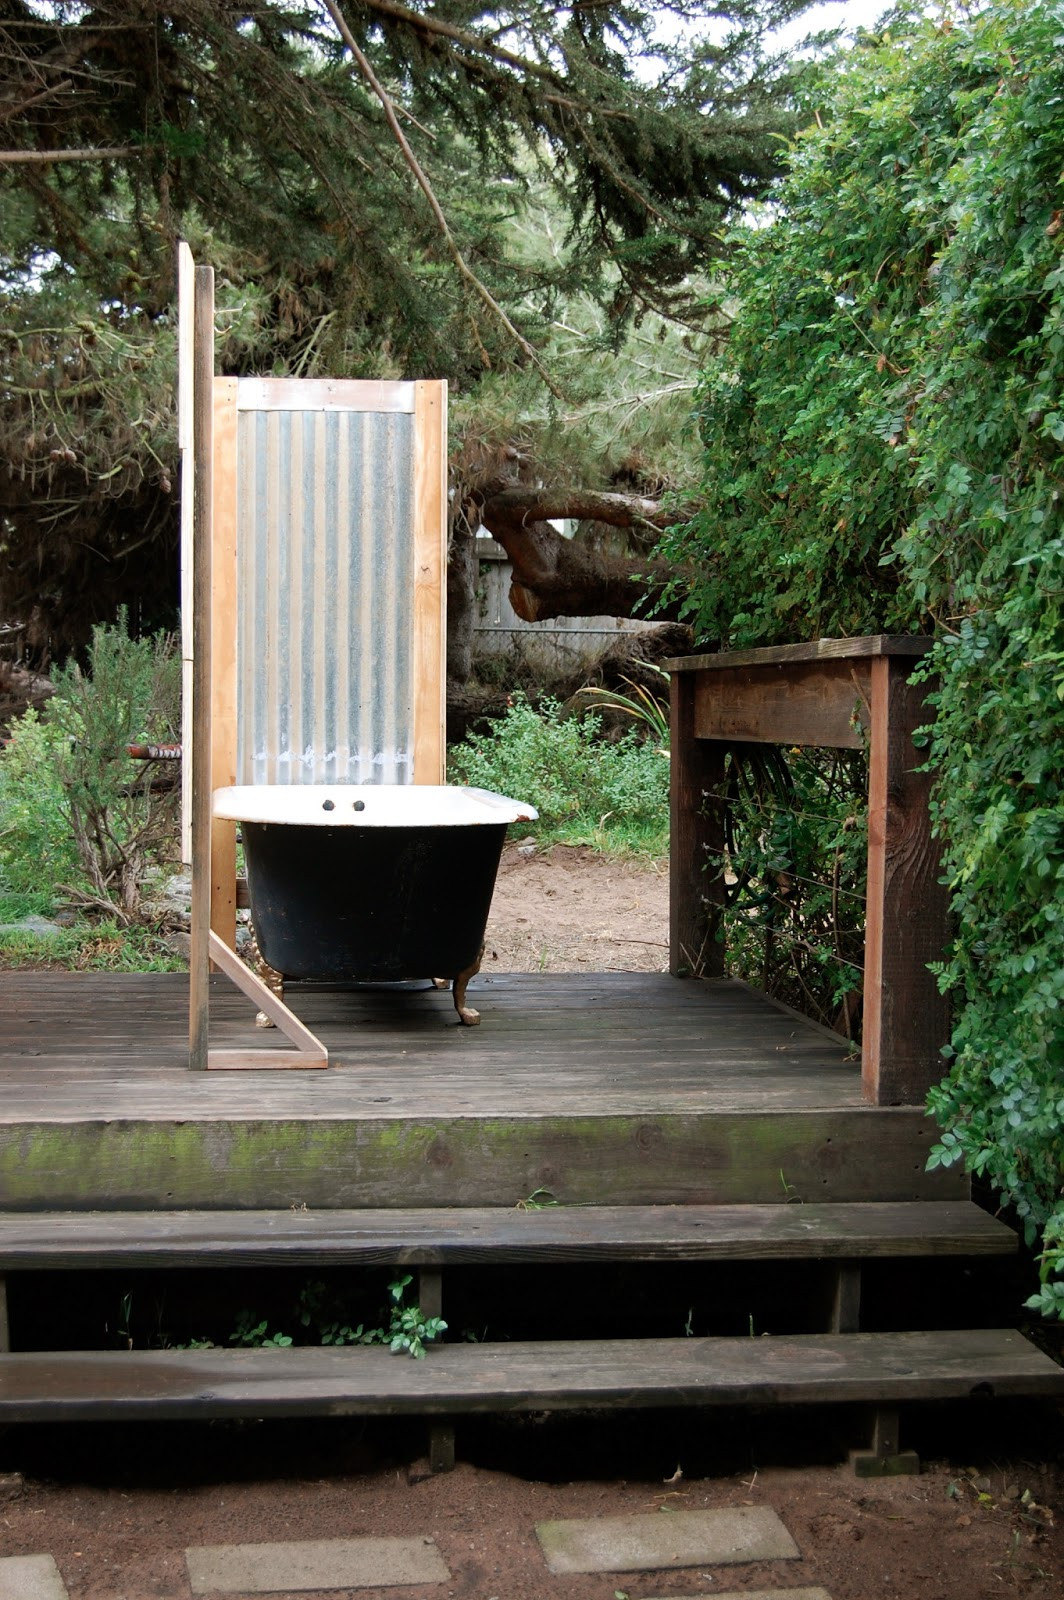 DIY Outdoor Soaking Tub
 Book Movie Nerd private outdoor BATHtub DIY style